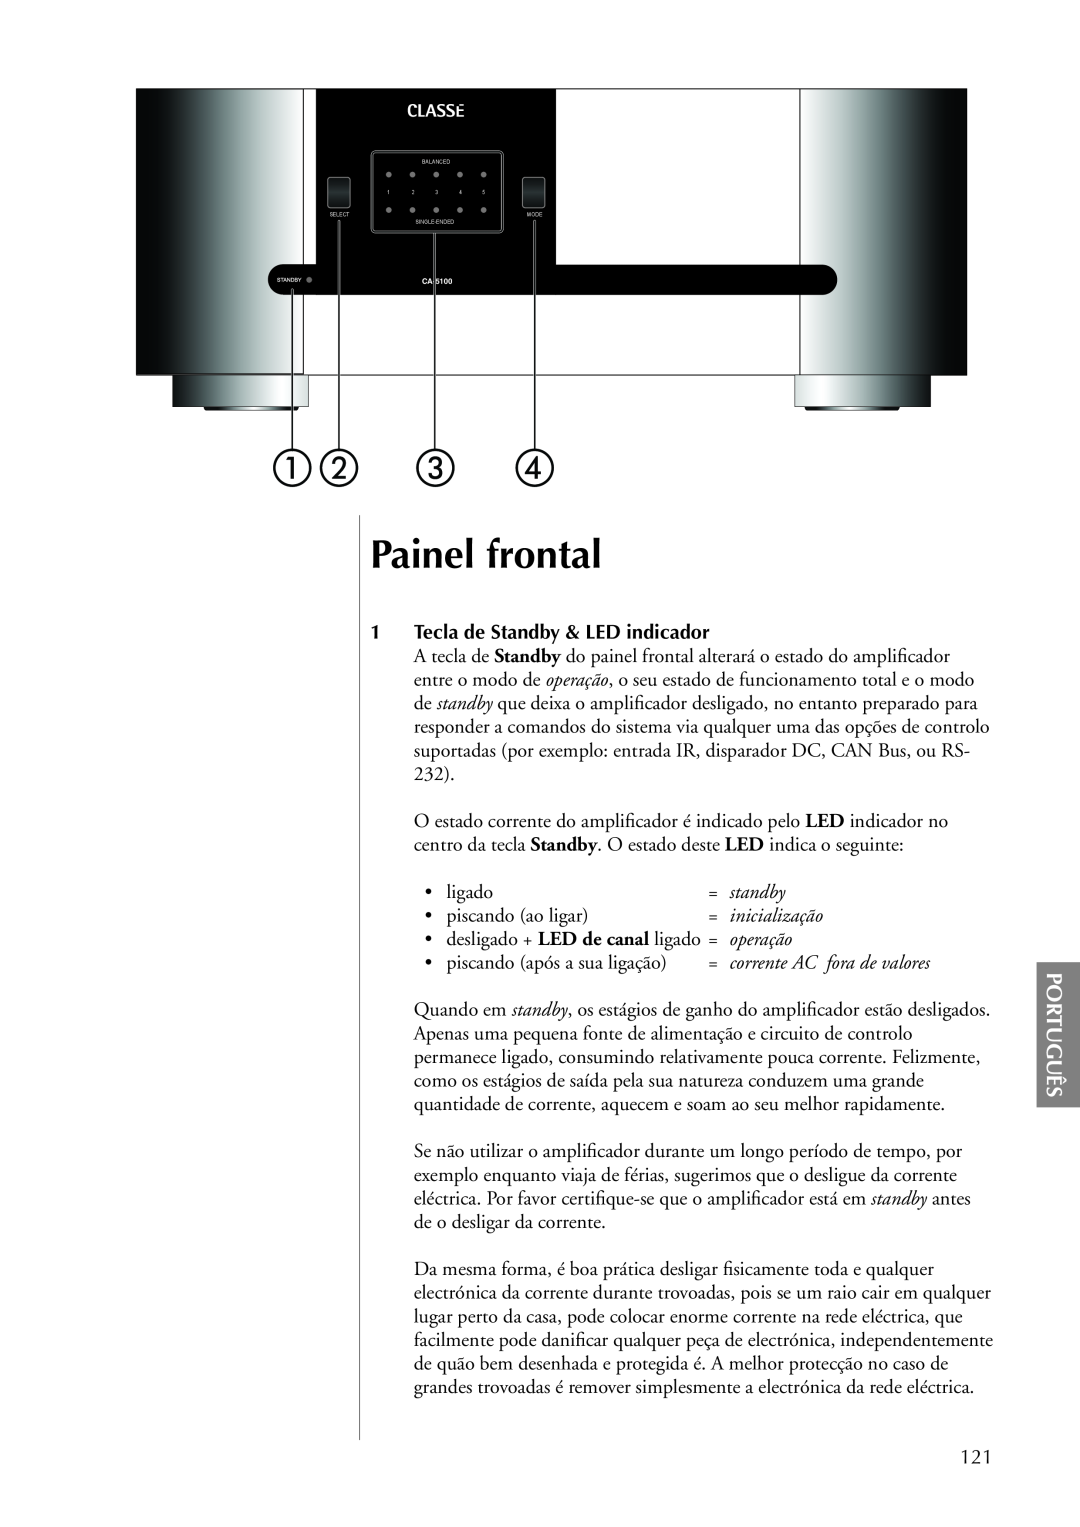 Classe Audio CA-5100 Painel frontal, Português, 1Tecla de Standby & LED indicador, standby, inicialização, operação 